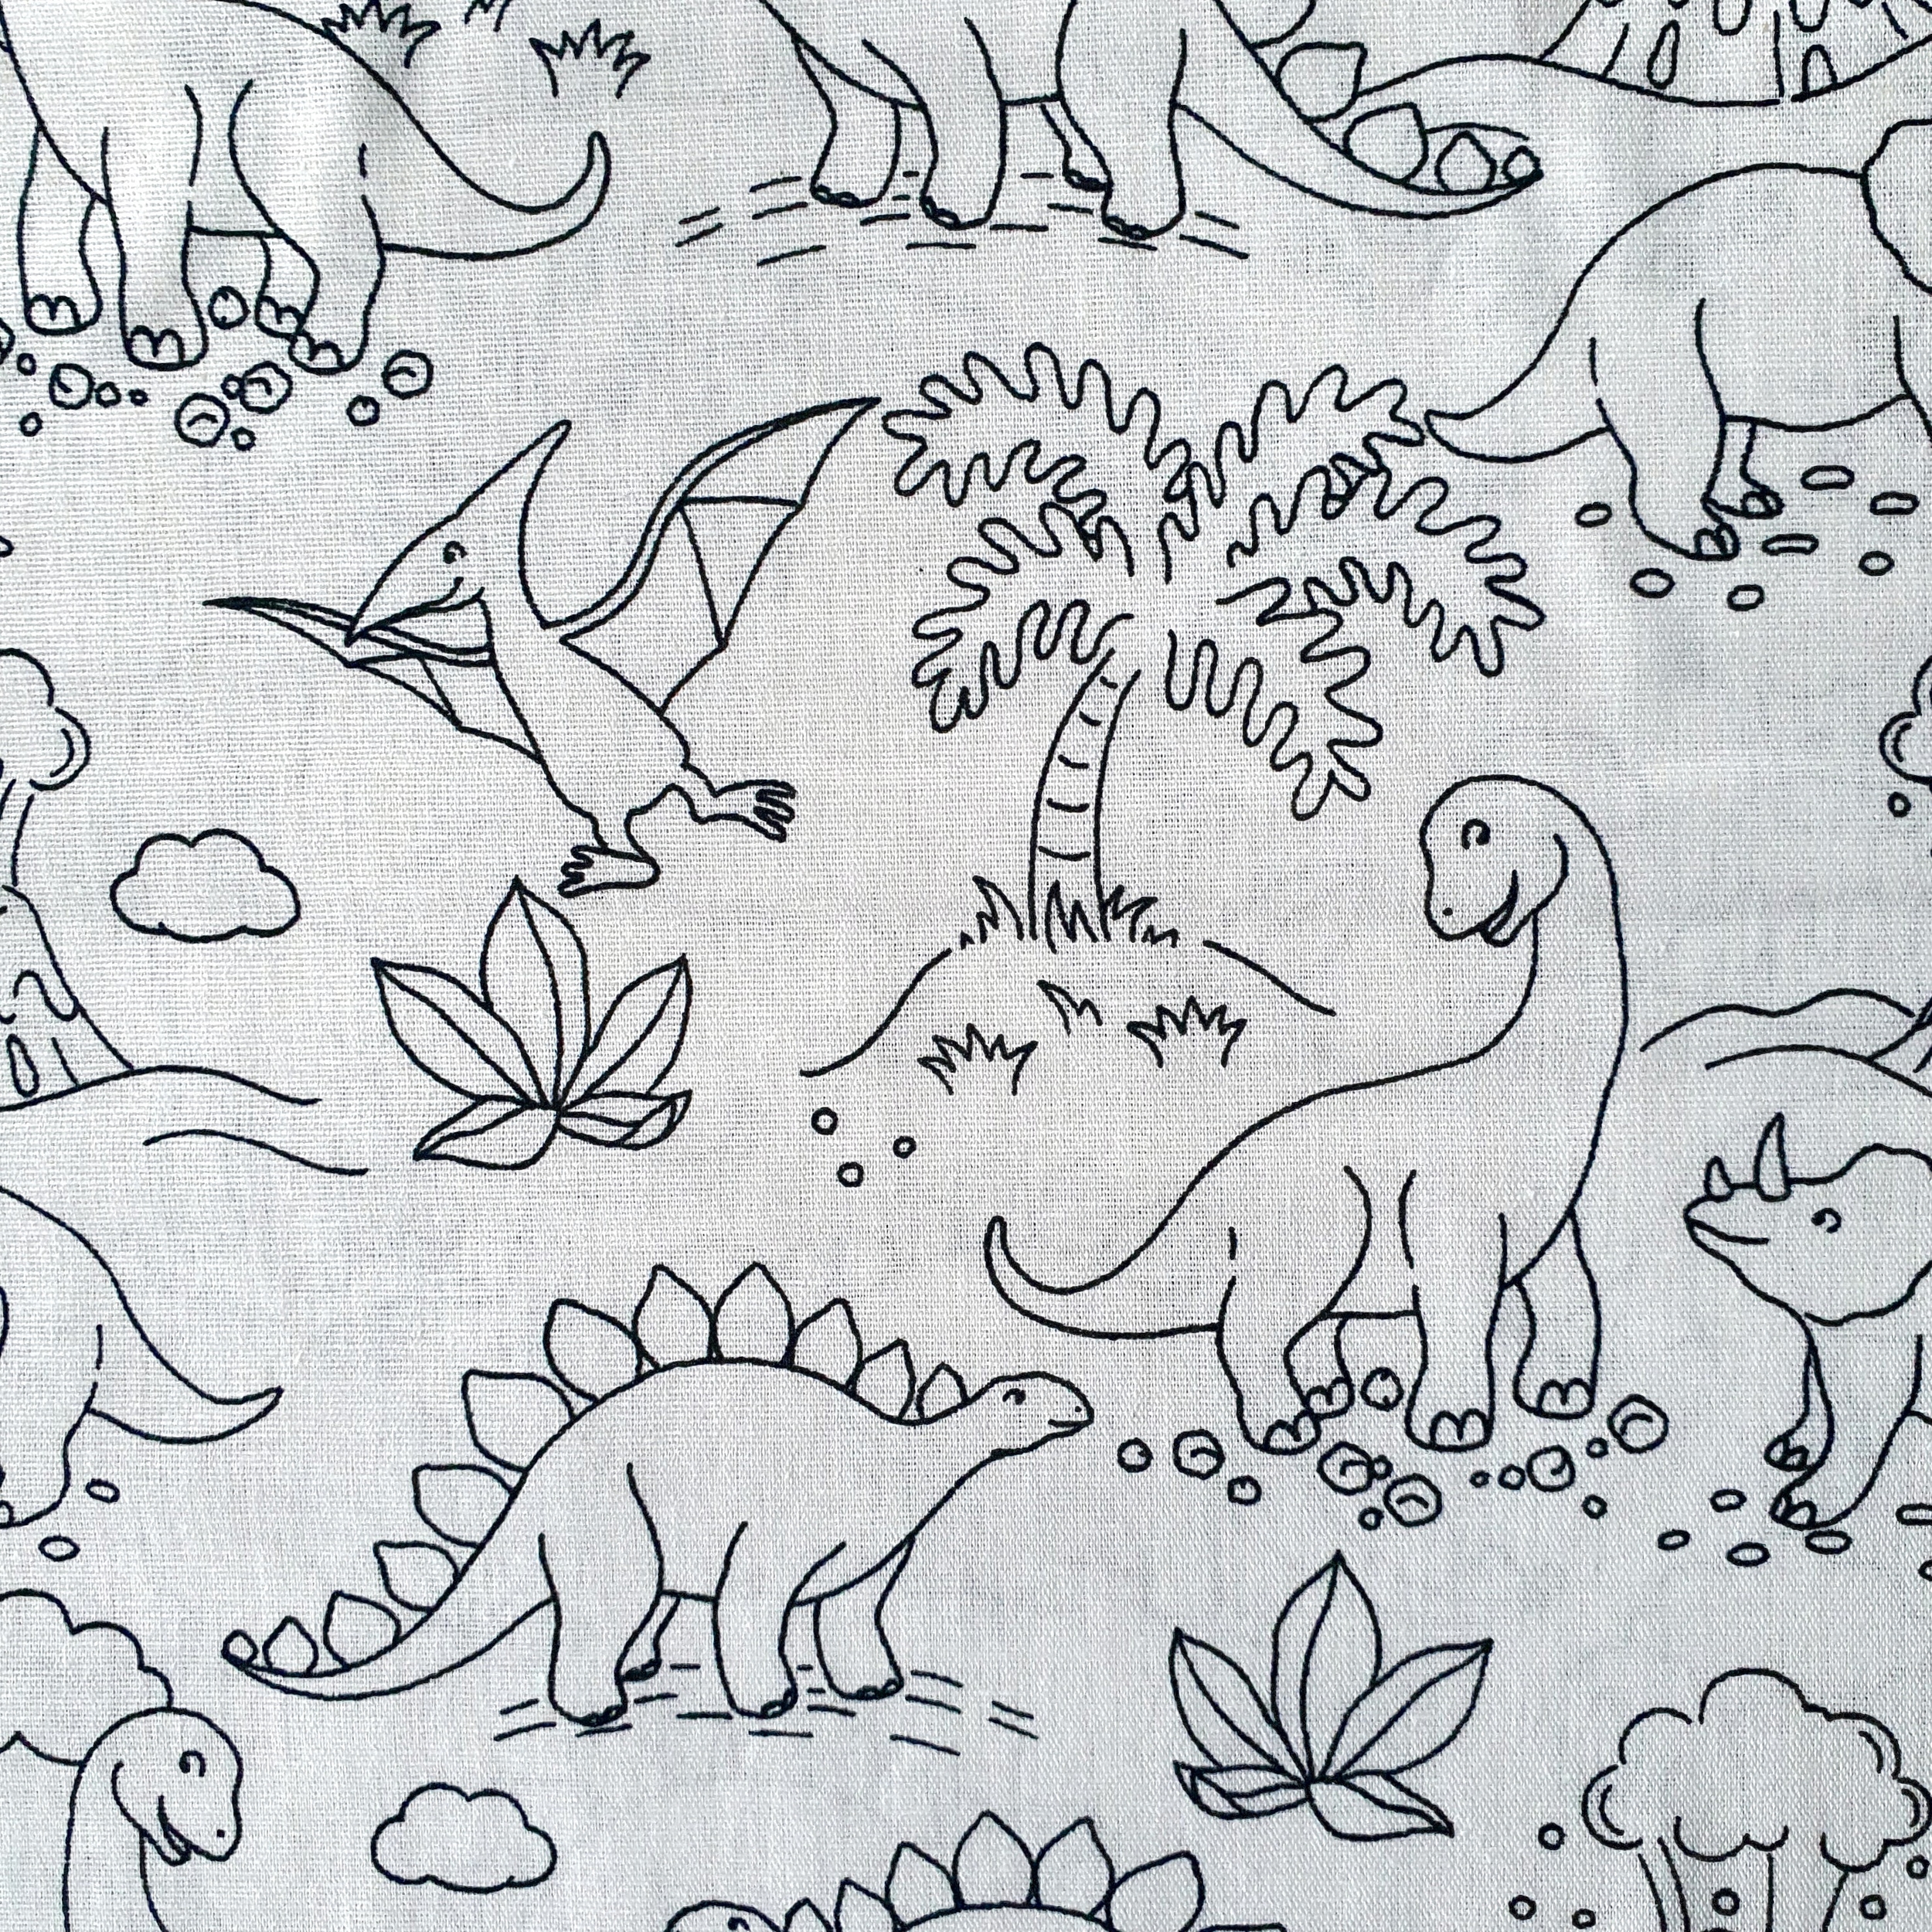 Tissu coton coloriage dinosaure noir et blanc (1)